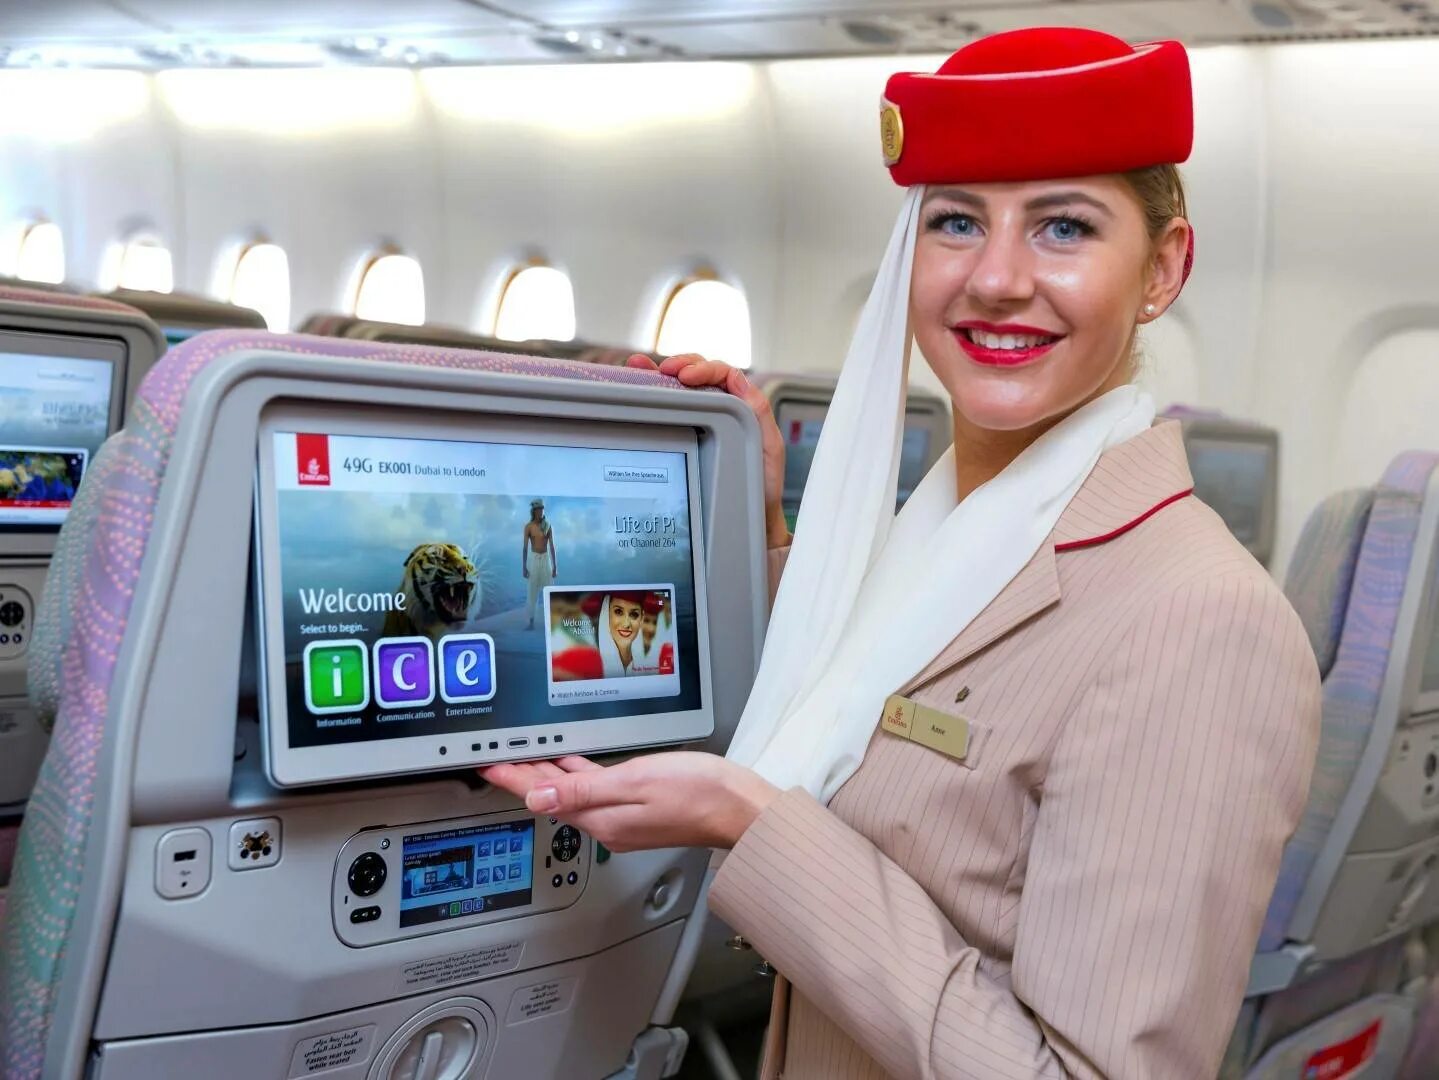 Товары в самолете россия. Борт Эмирейтс самолета. Emirates Airlines a380 Inflight. Развлечения в самолете. Мультимедийная система в самолете.